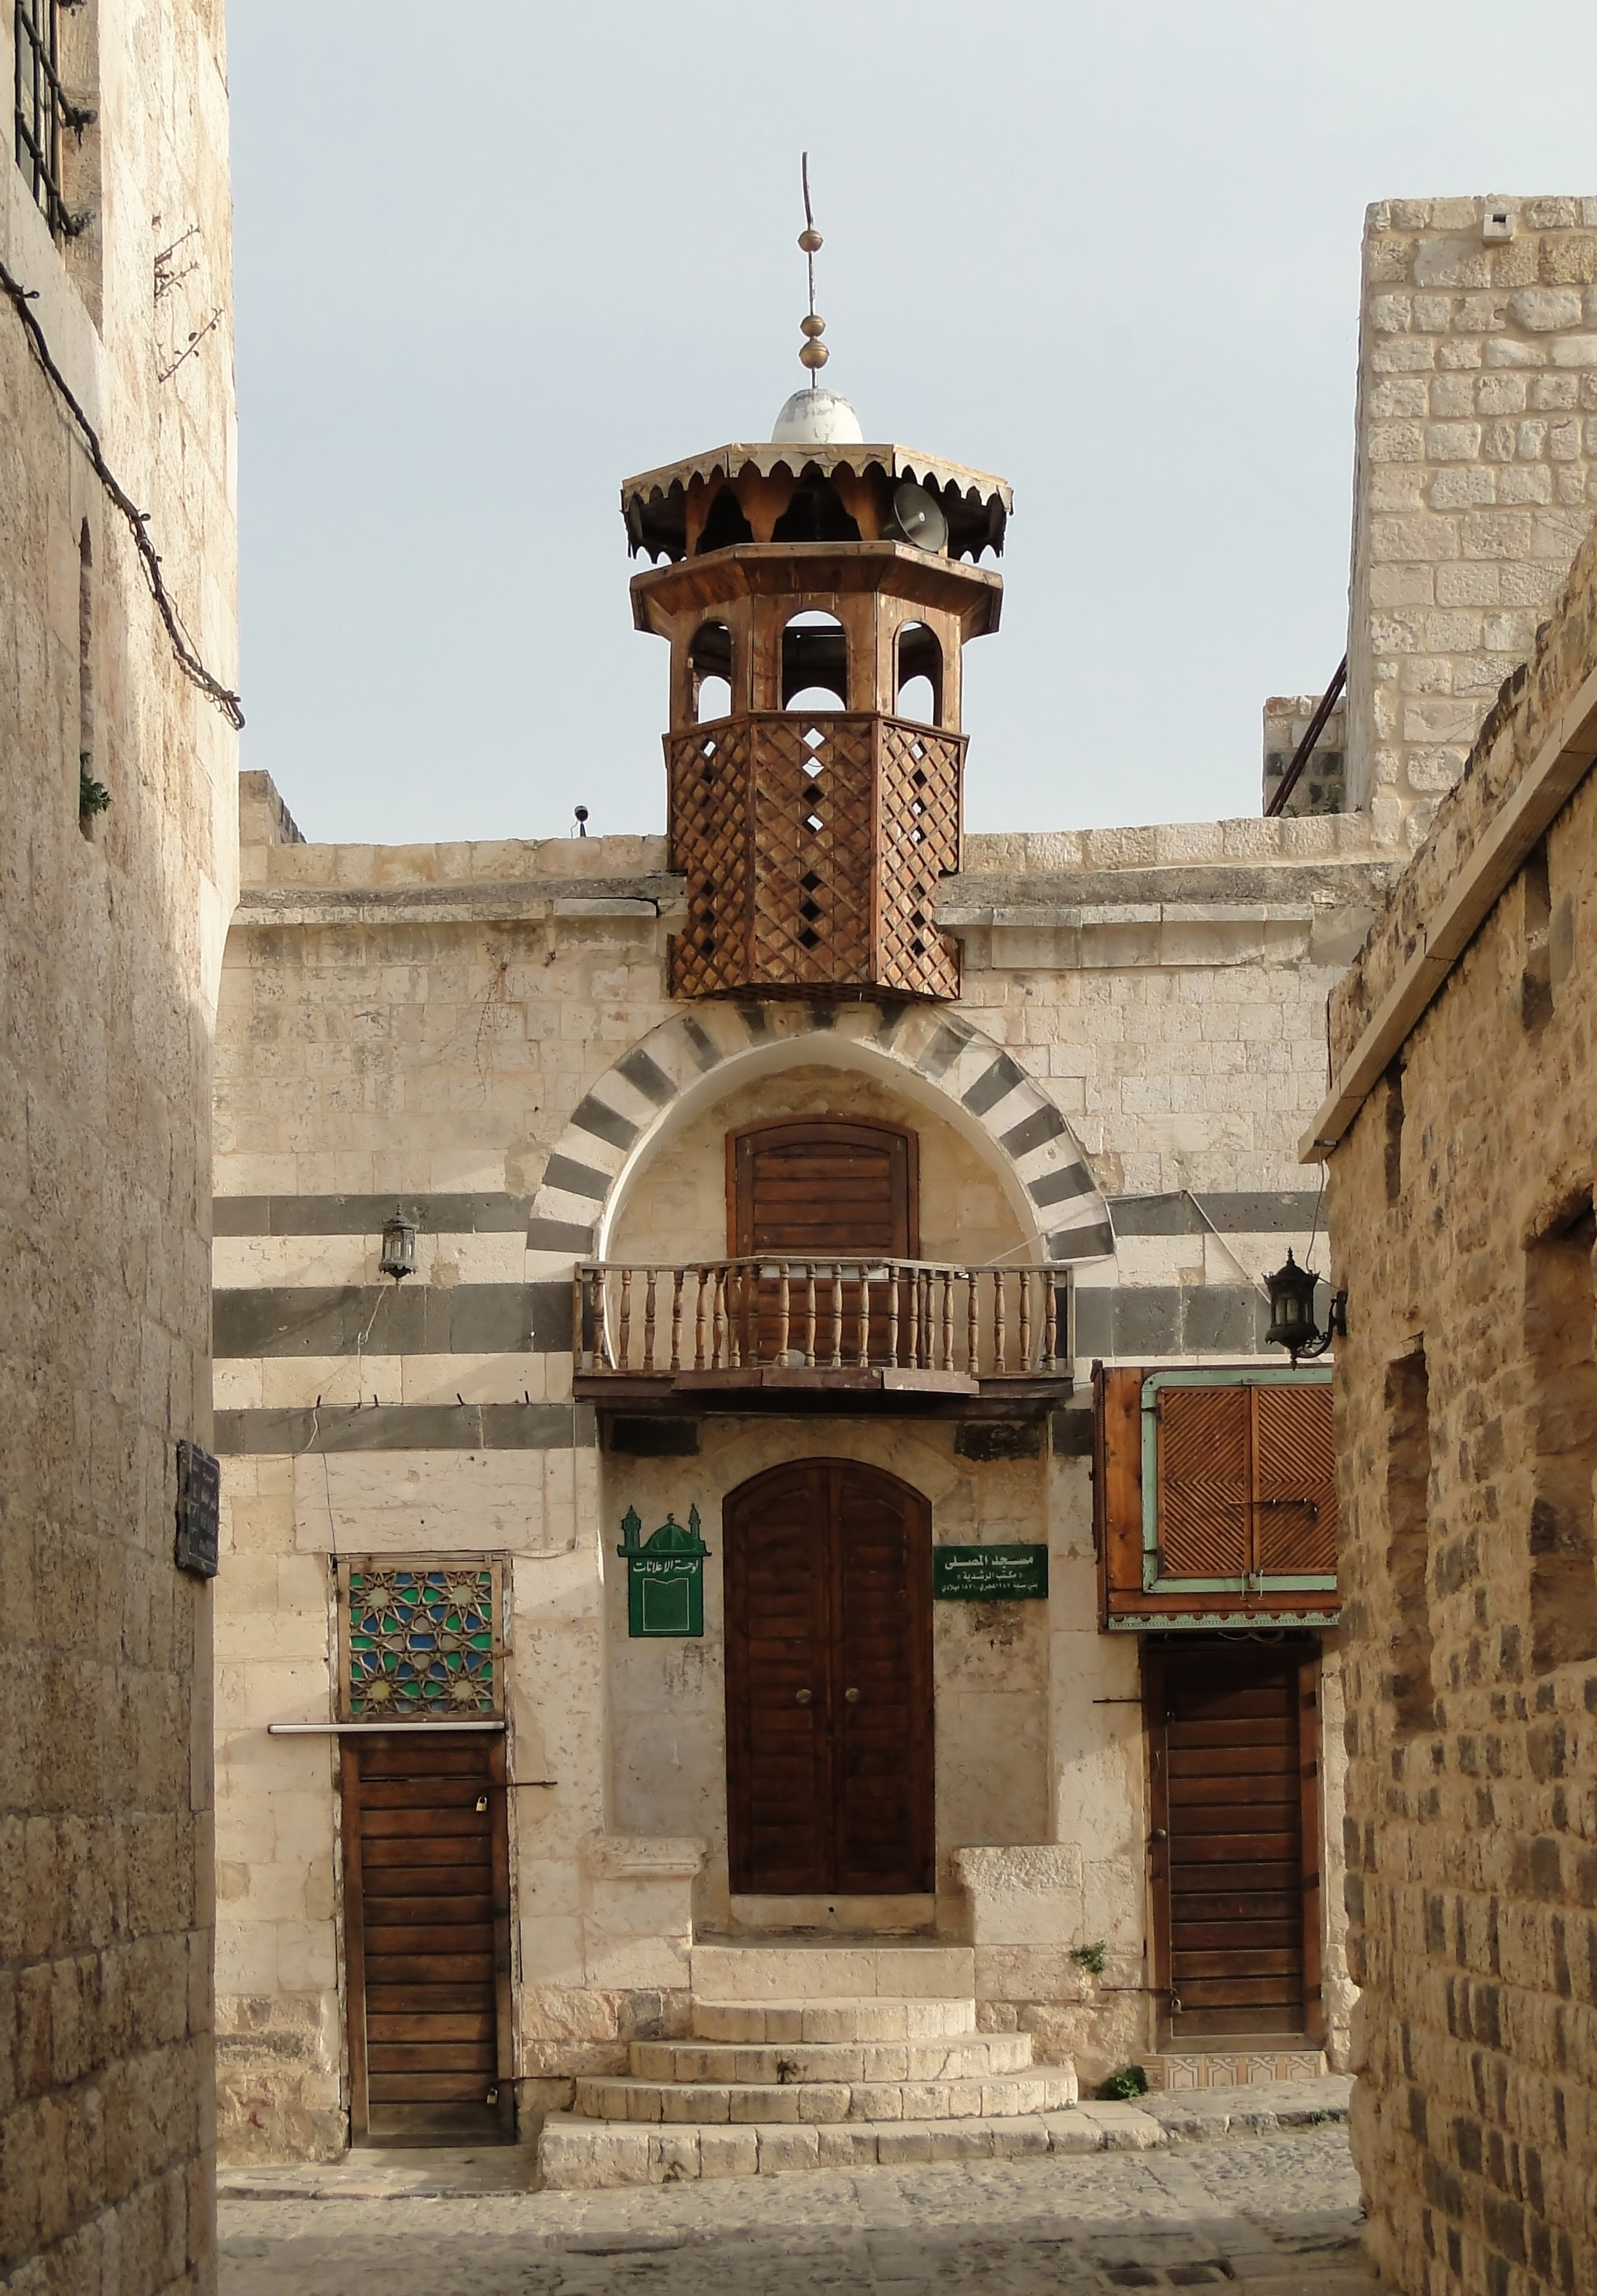 Facade in Hama